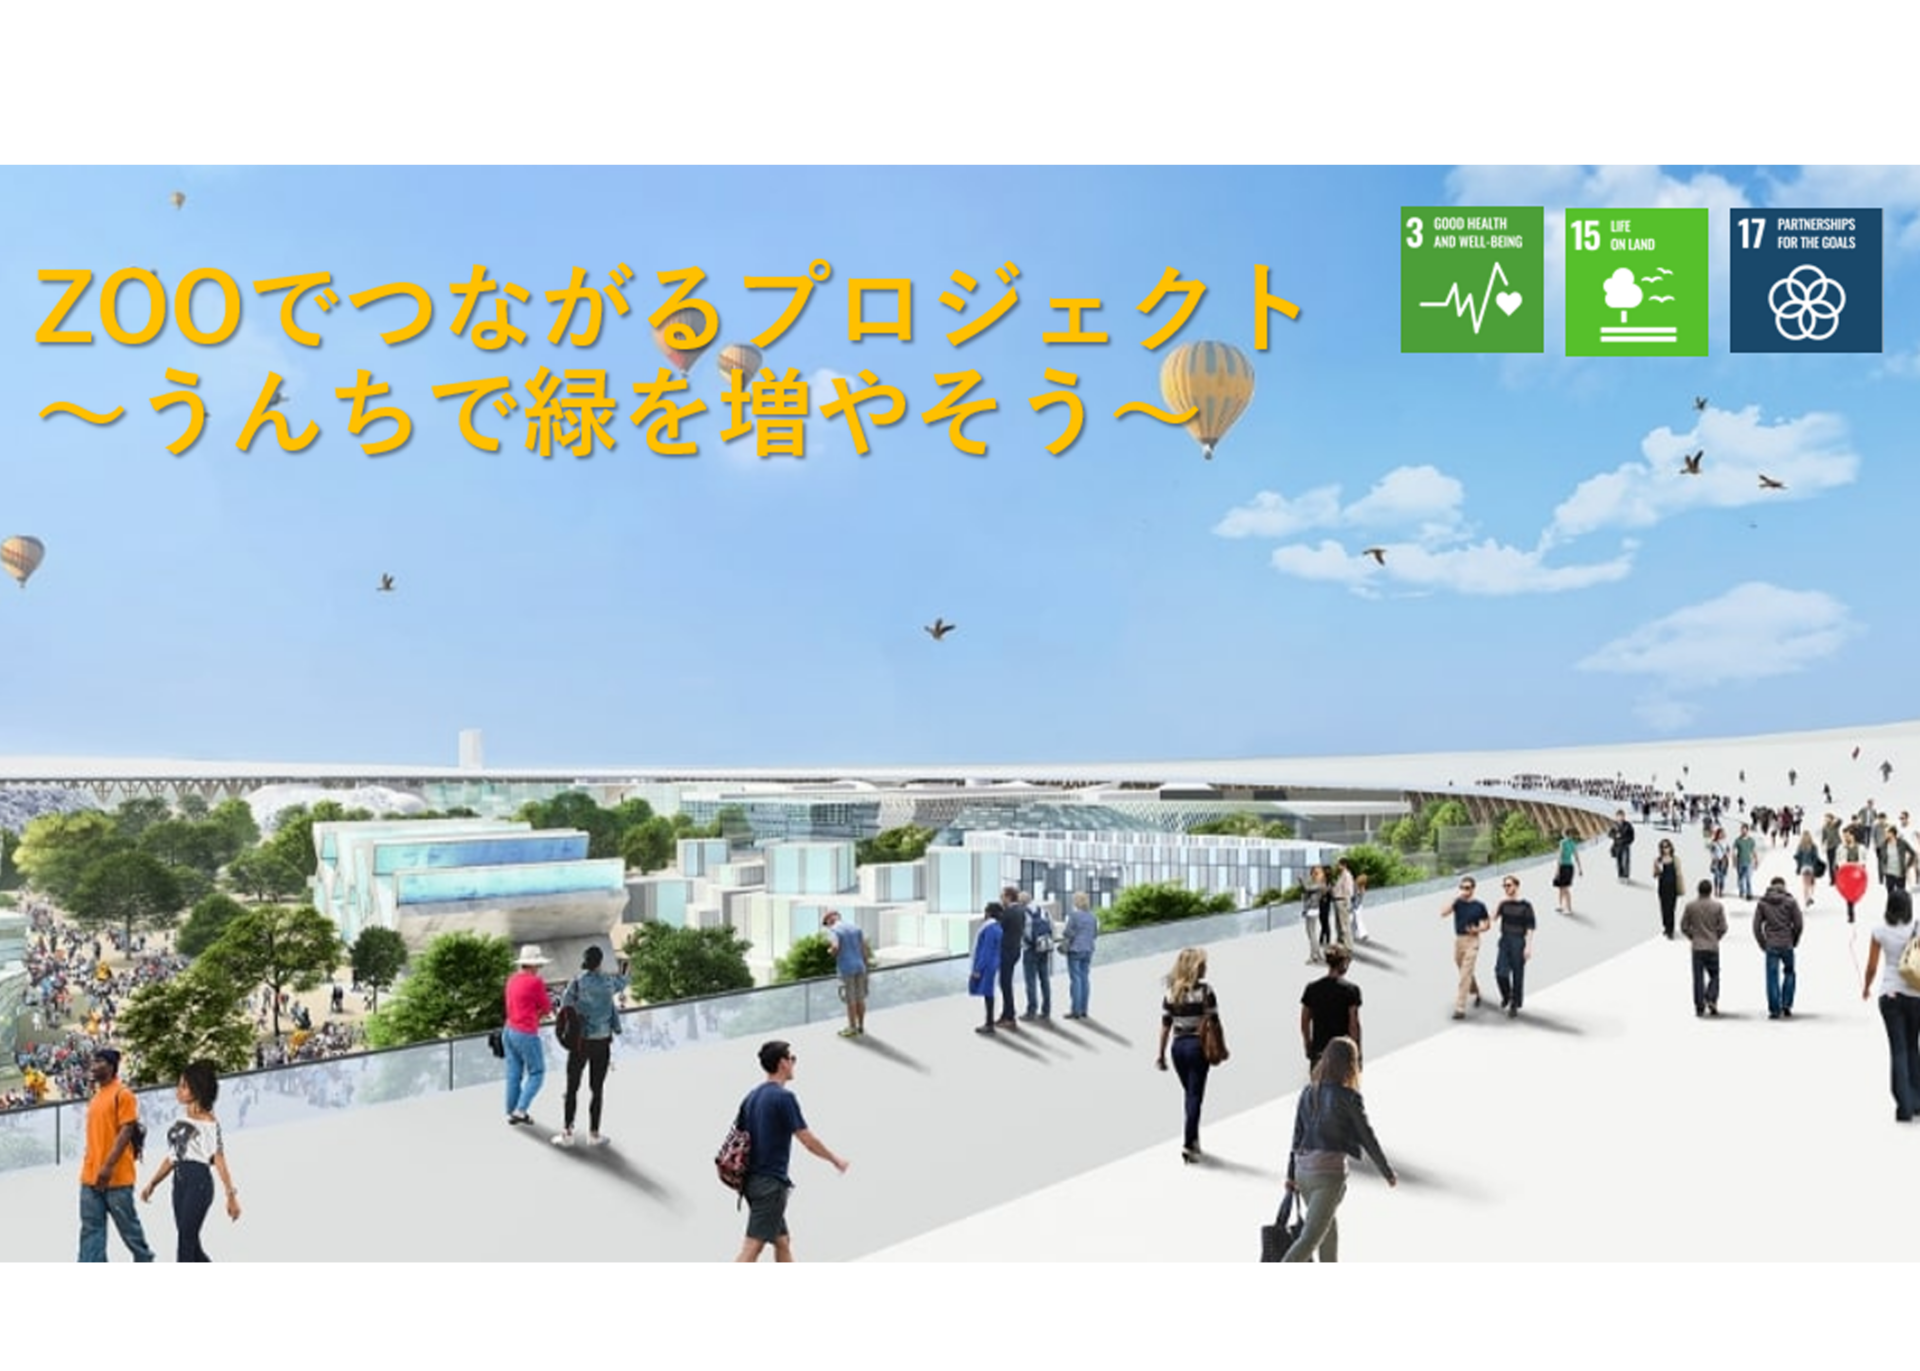 動物園が市民と協働してごみの削減に取り組み、結果として動物園や大阪の緑が増えていくとともに、持続可能な社会の担い手を増やしていきます。